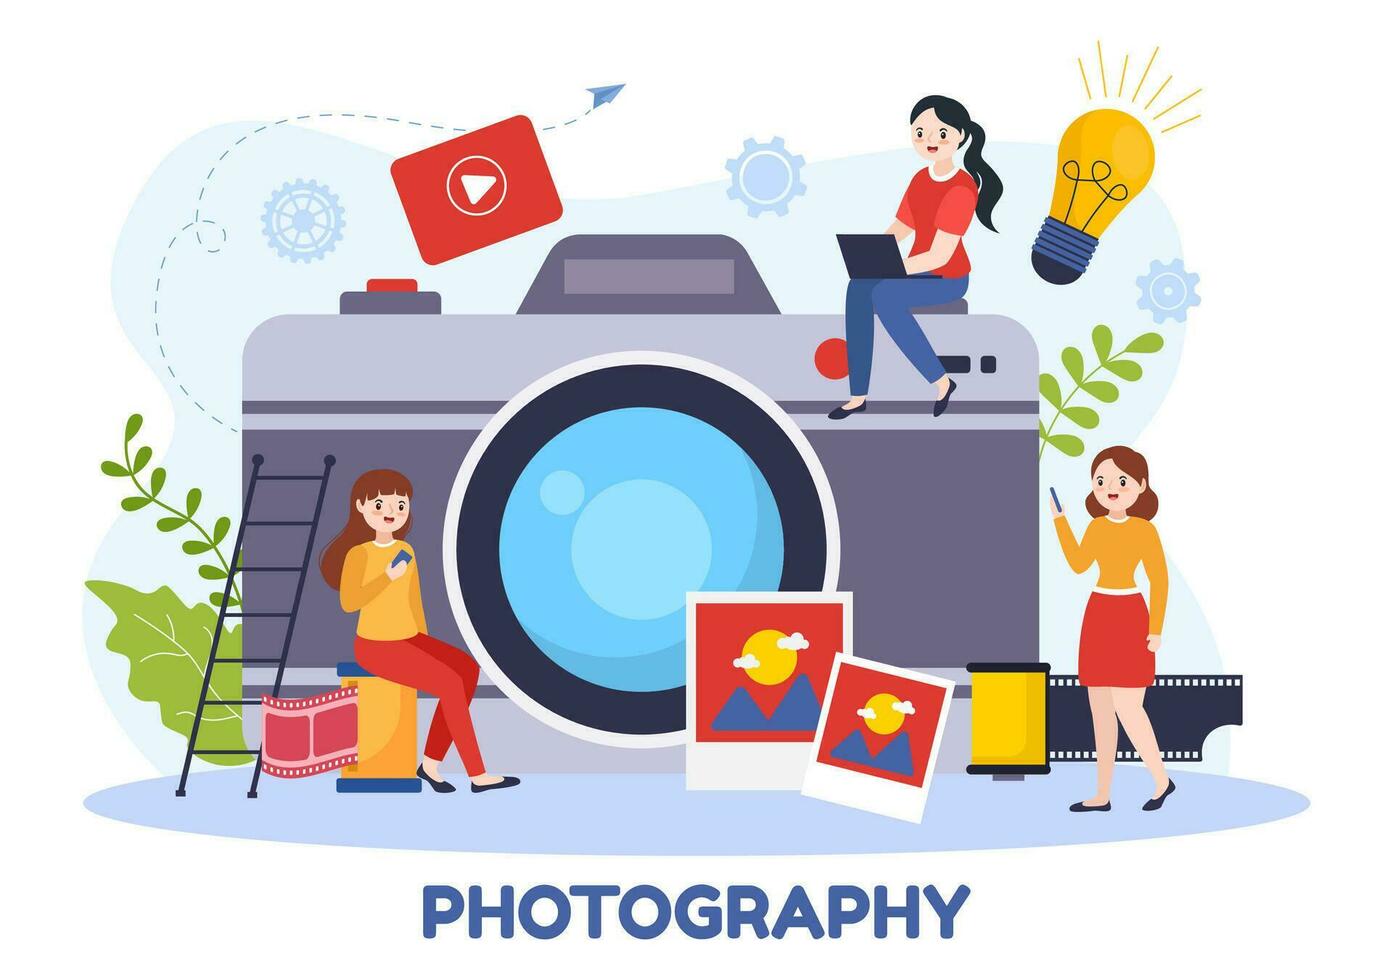 fotografi vektor illustration med kamera och Utrustning till fånga resa, turism, äventyr och minnen i en platt tecknad serie bakgrund design